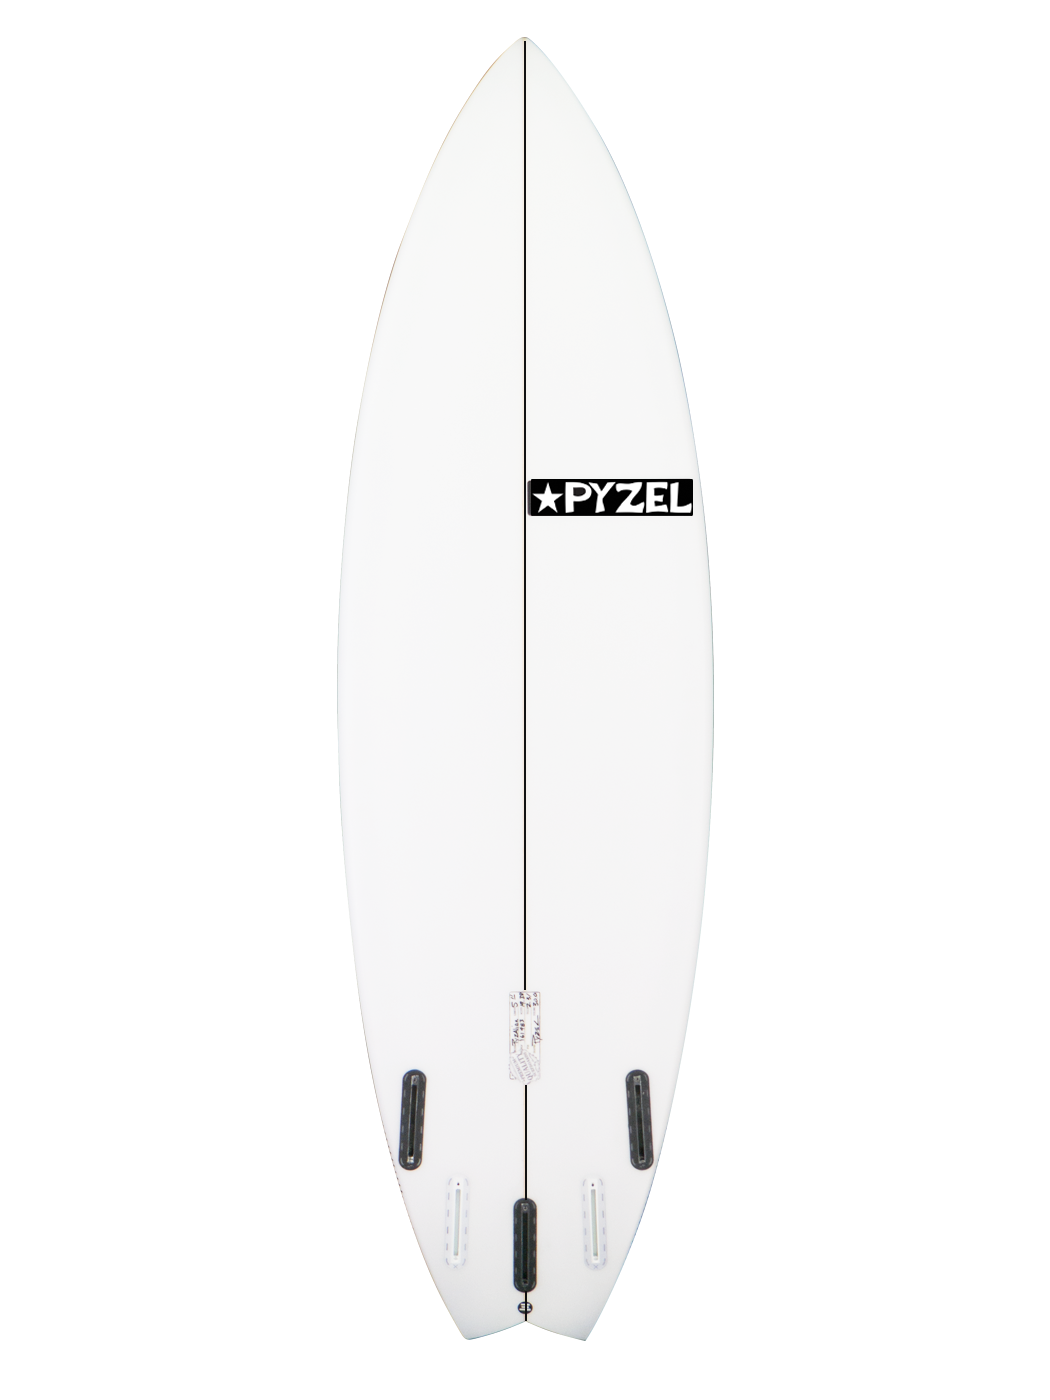 Pyzel Surfboards - Pyzalien